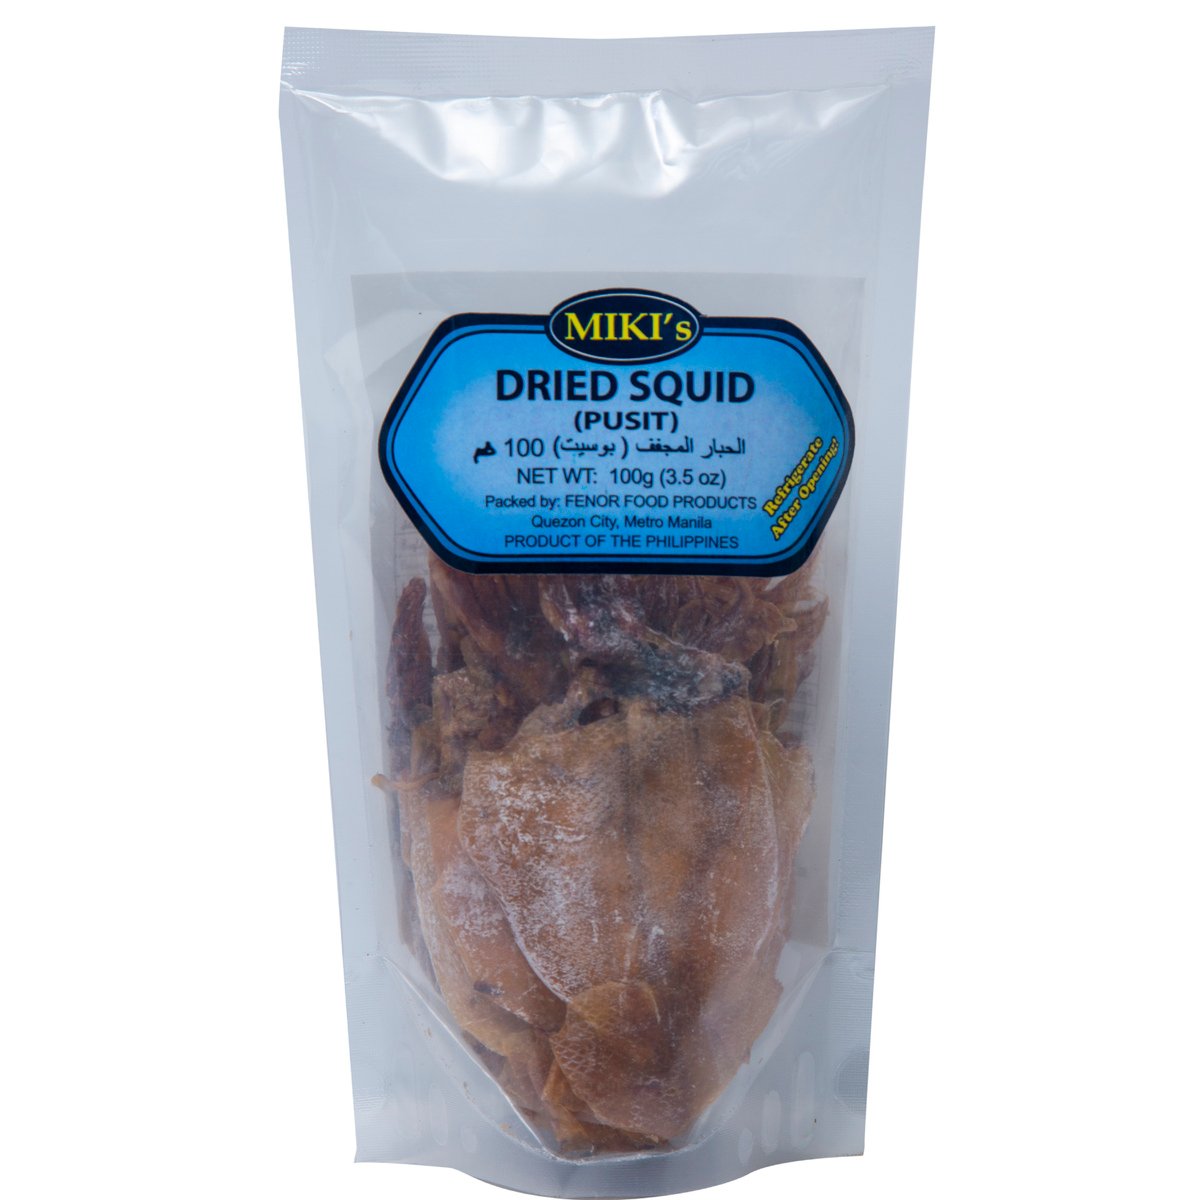 Miki's Dried Squid (Pusit) 100 g